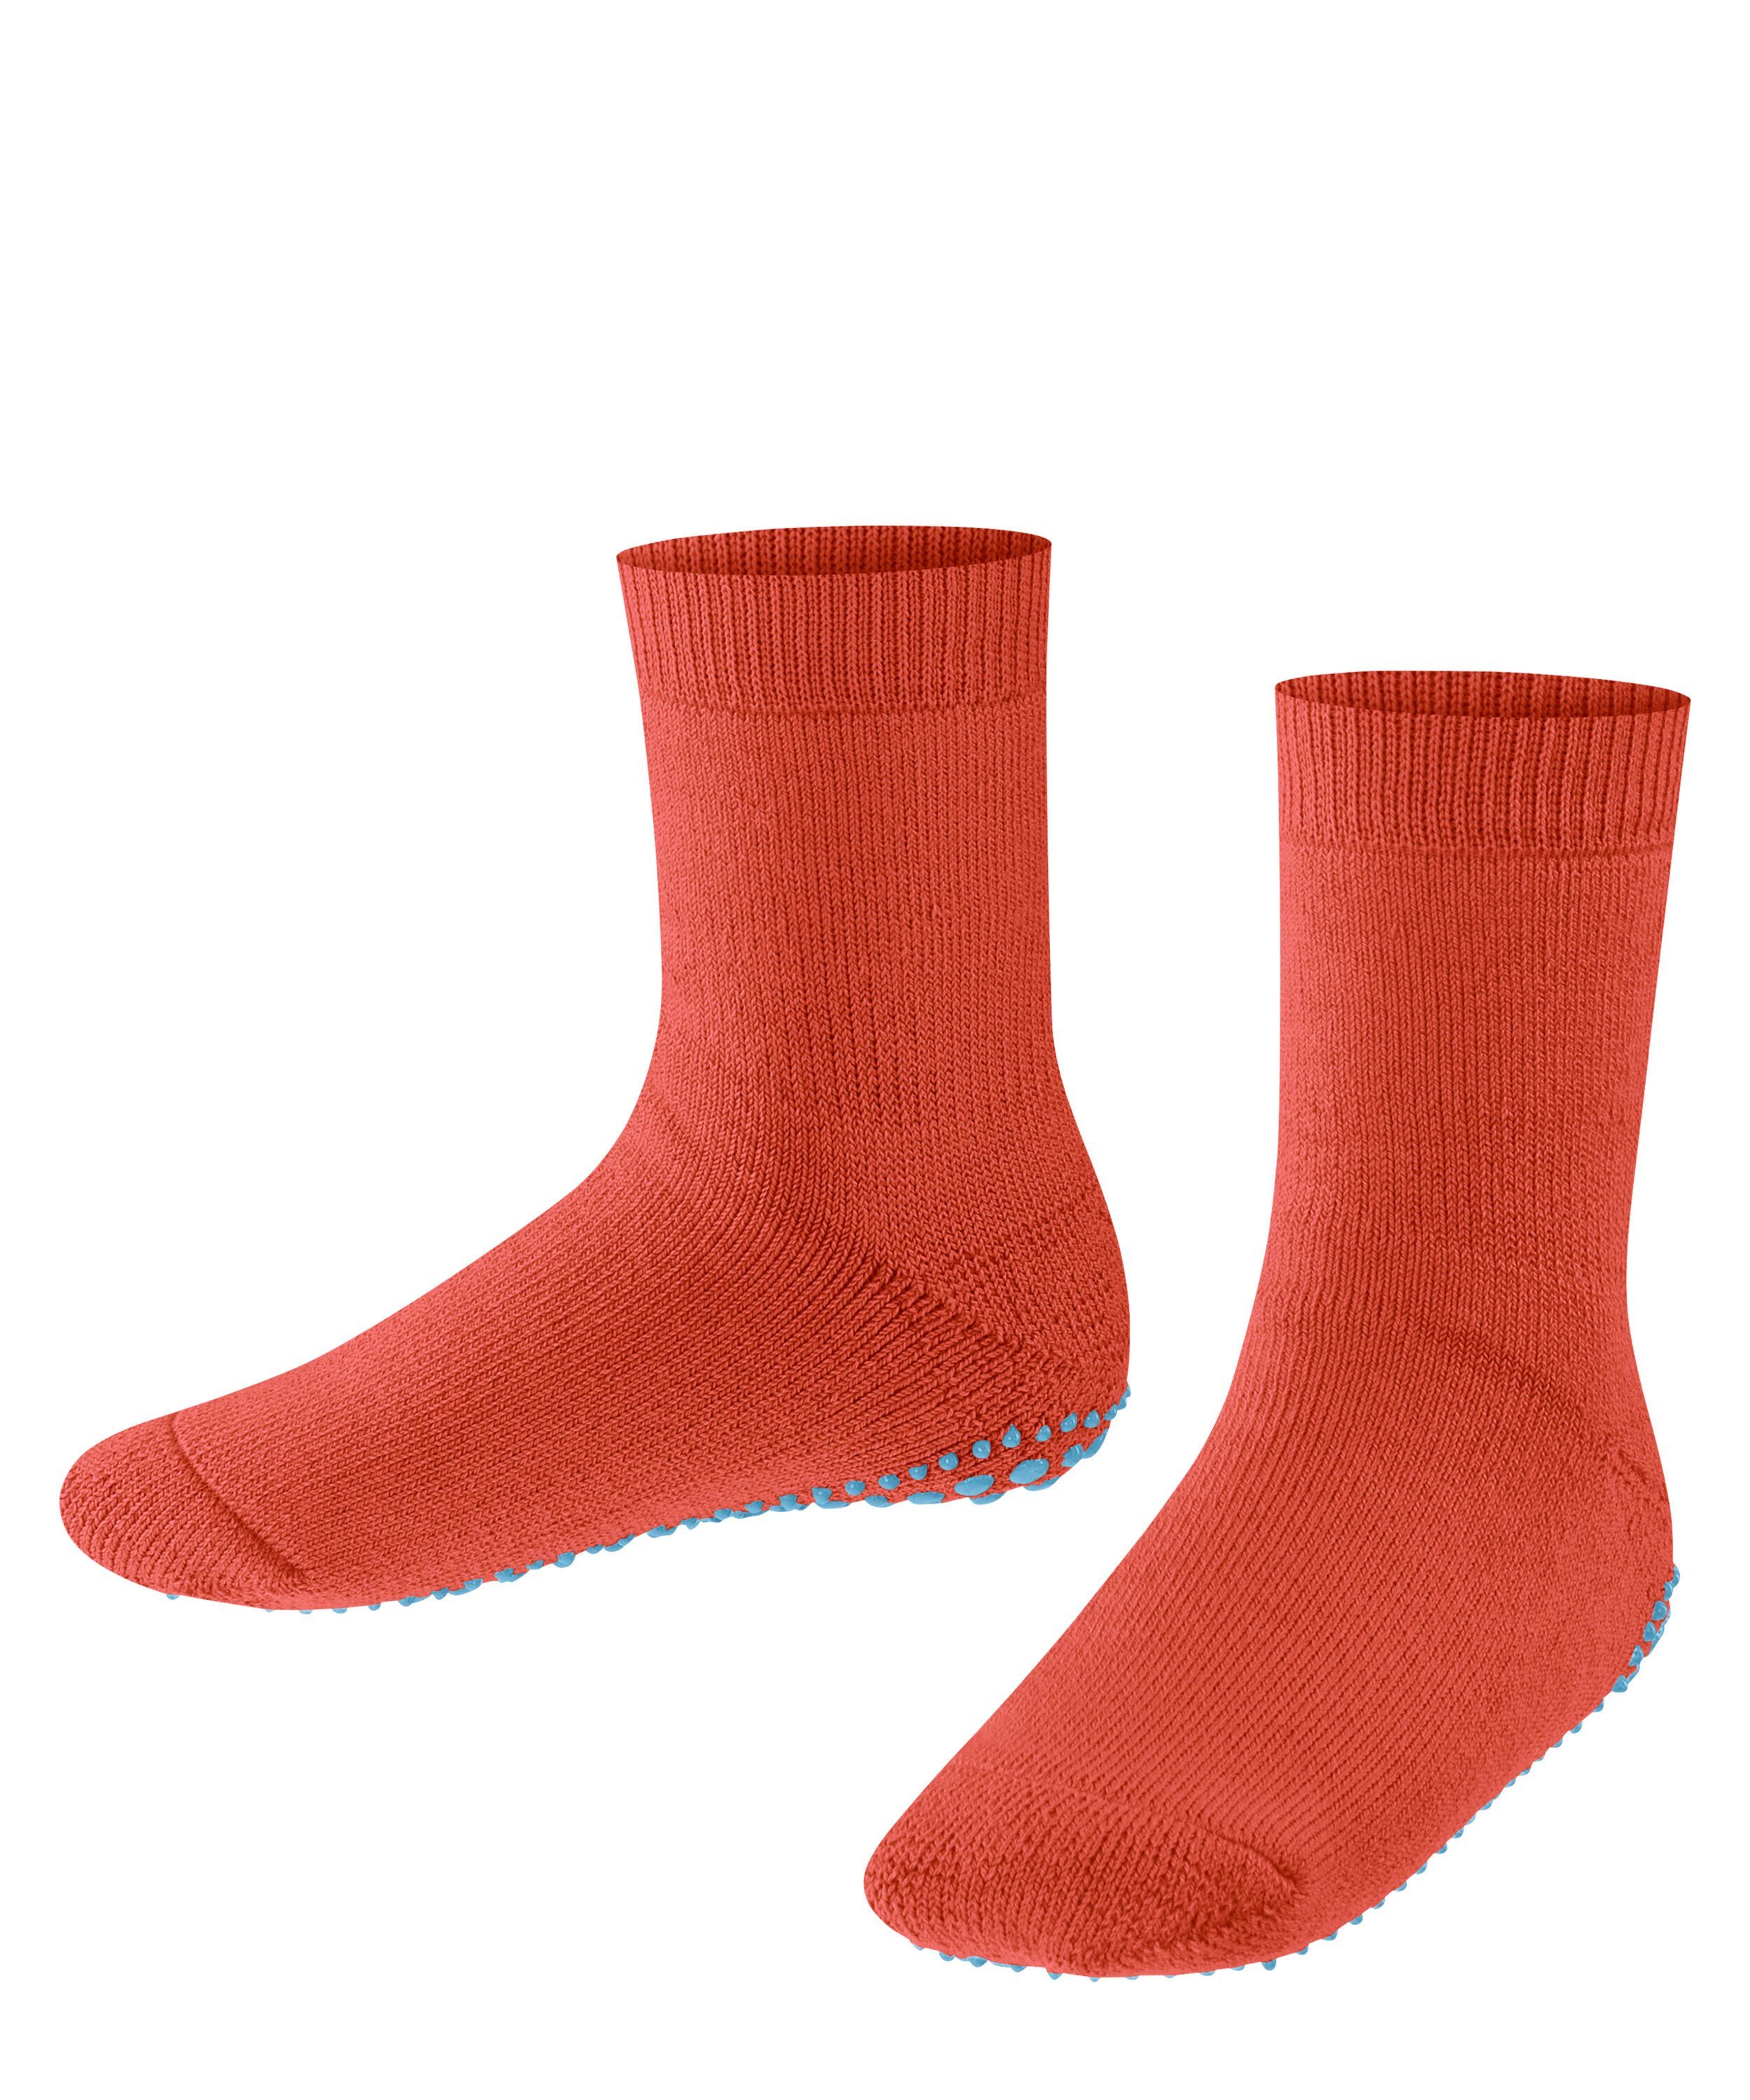 tangerine Catspads FALKE (8911) (1-Paar) Socken